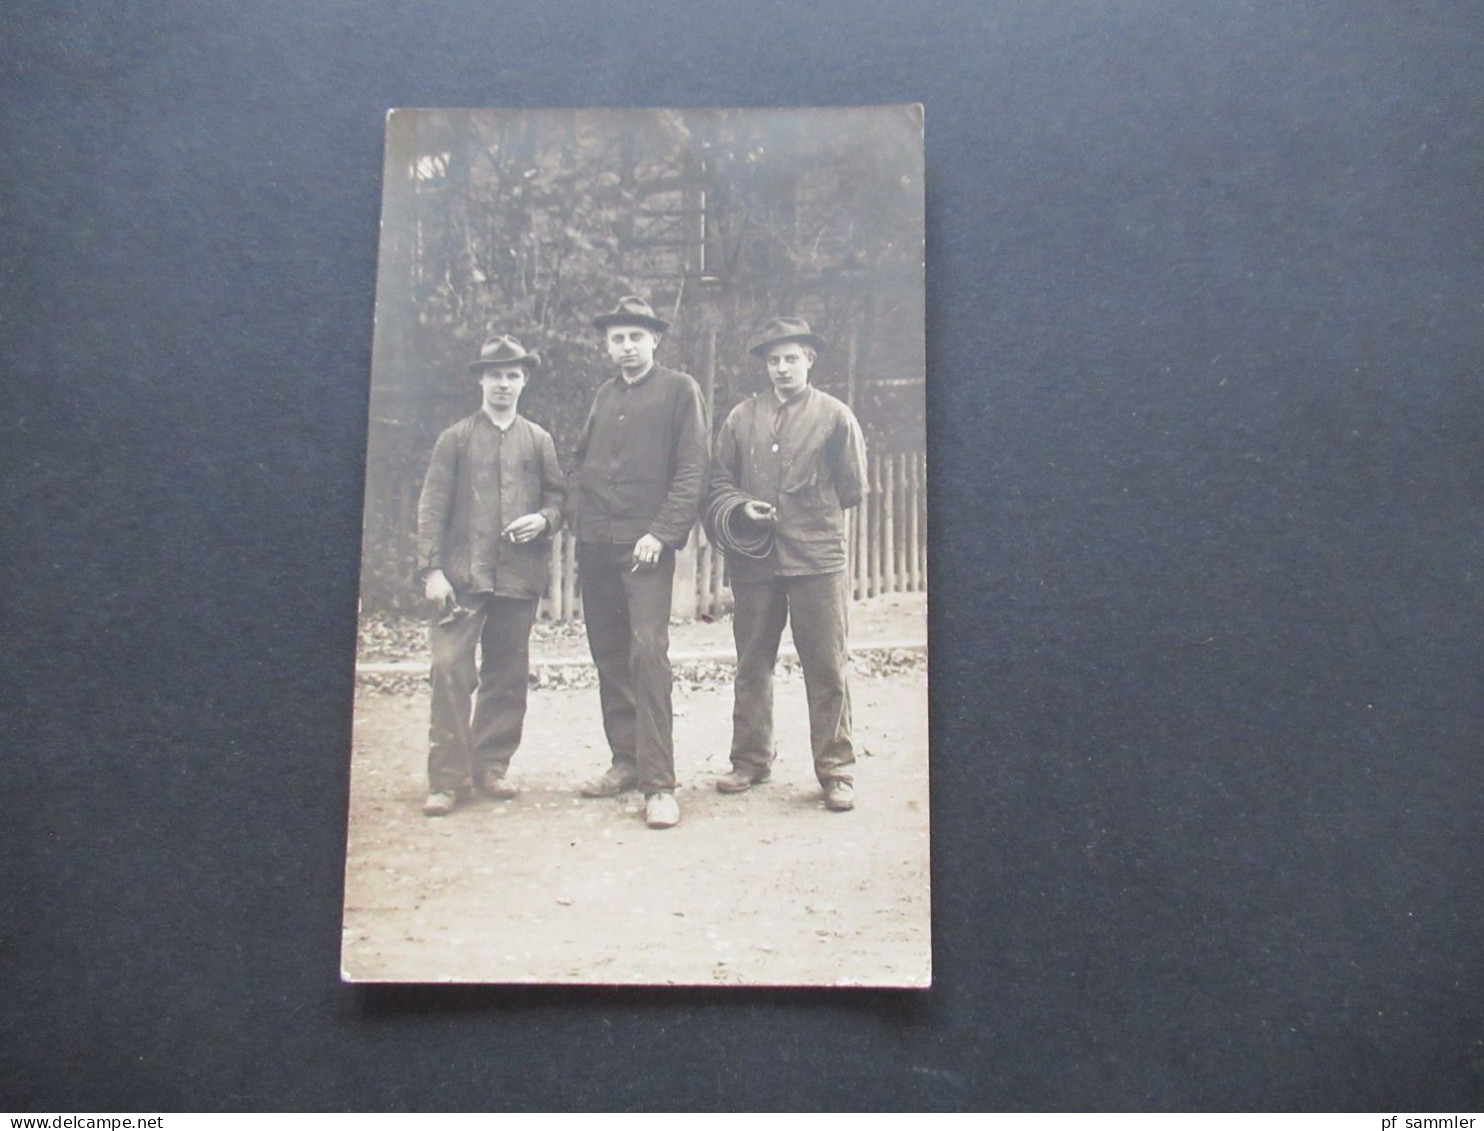 Foto AK 1910 / 20er Jahre Handwerker / 3 Junge Männer Mit Werkzeug / Burschen - Industrial